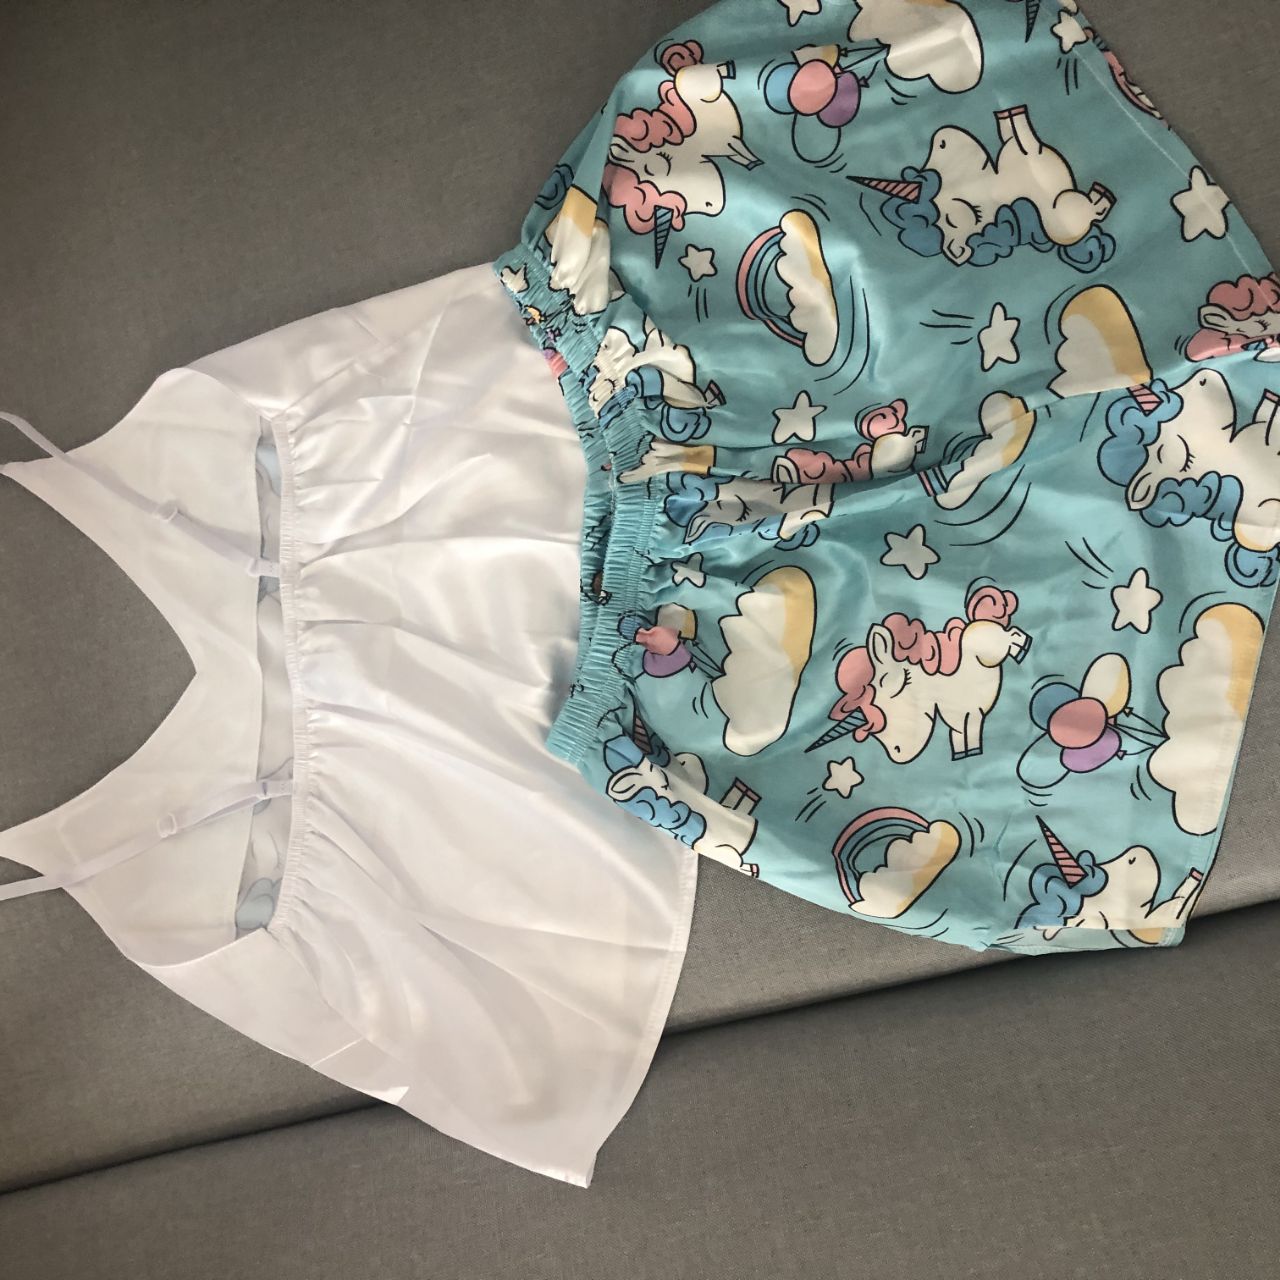 QWEEK jednorożec piżama dla kobiety jedwabiu Sexy Pijamas kobiety bielizna nocna Satin lato piżama Femme V Neck odzież domowa 2020 dropshipping